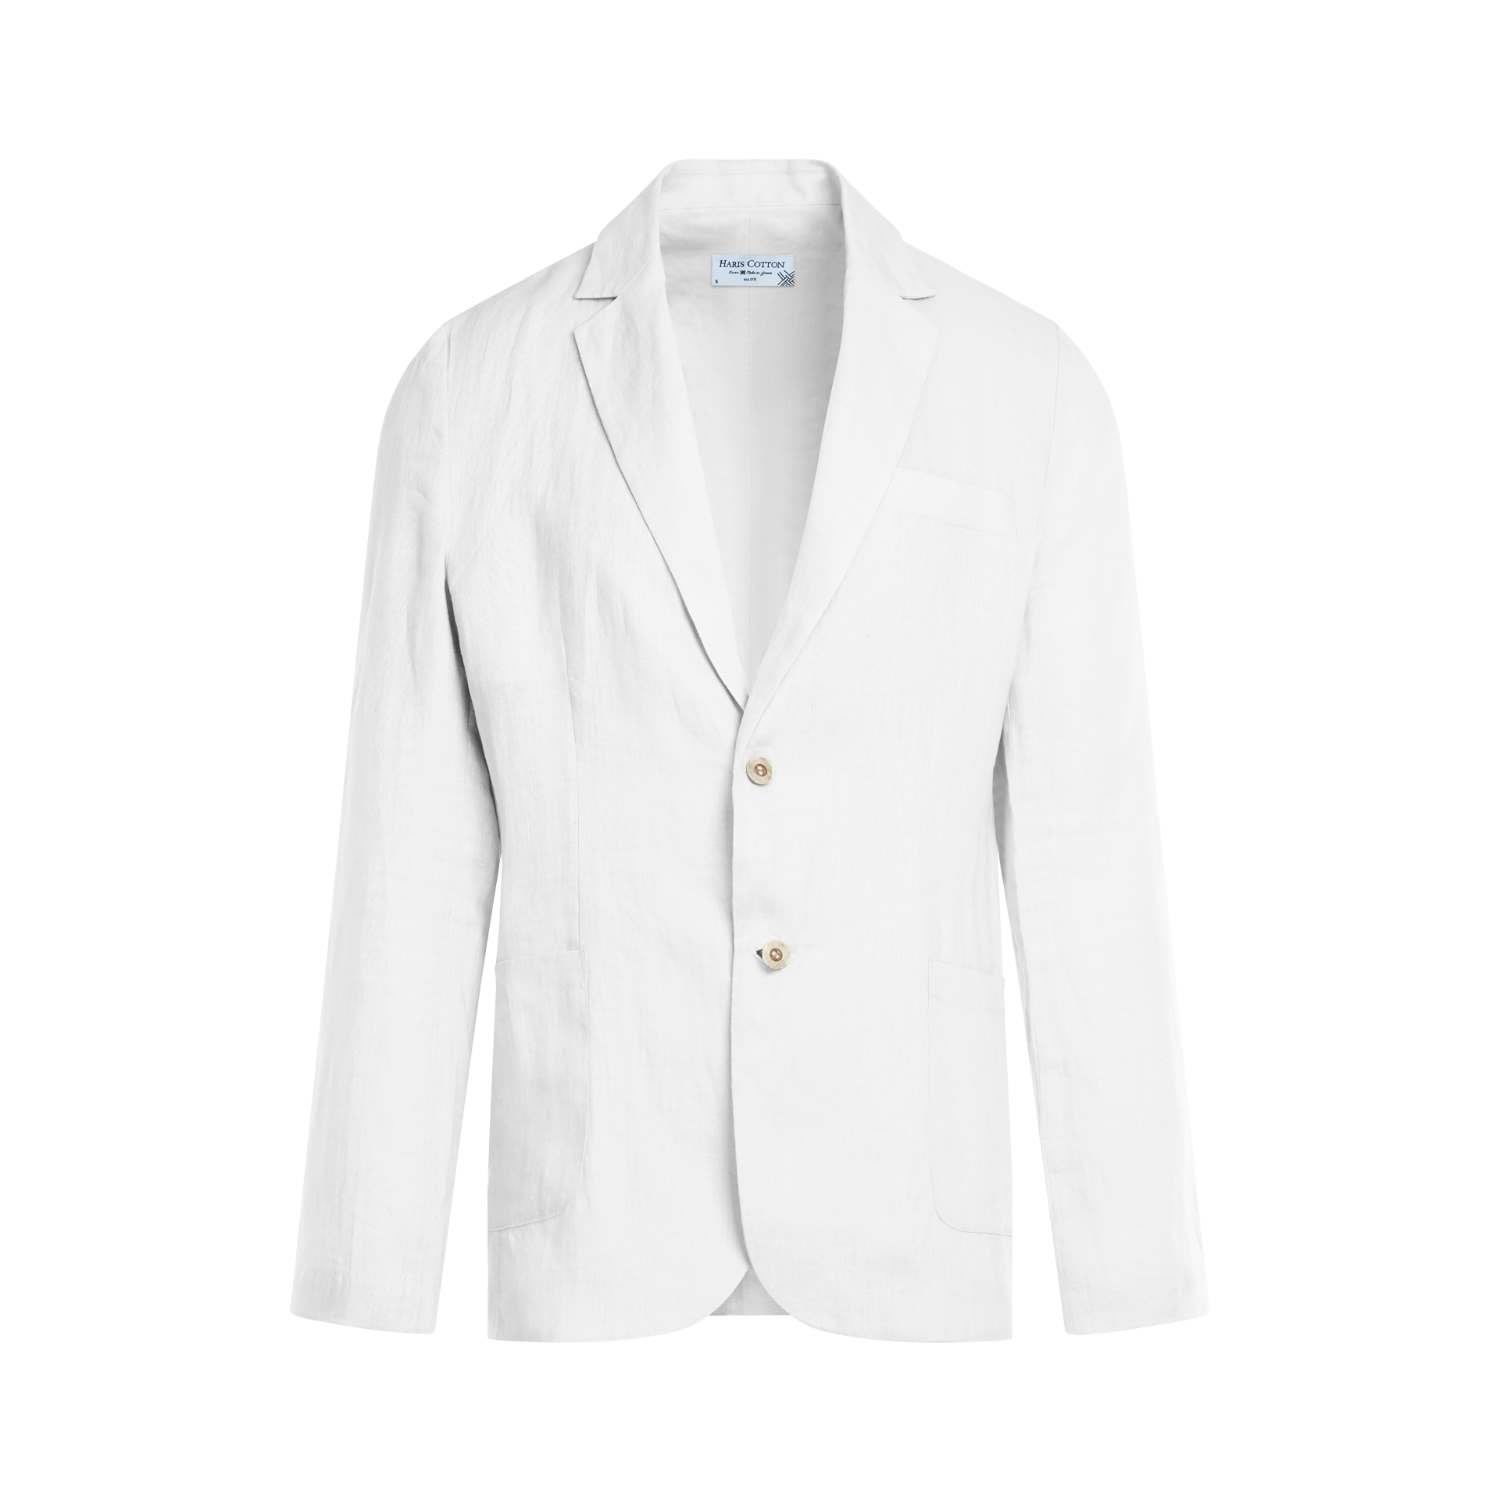 Haris Cotton Men's Classic Linen Jacket - White